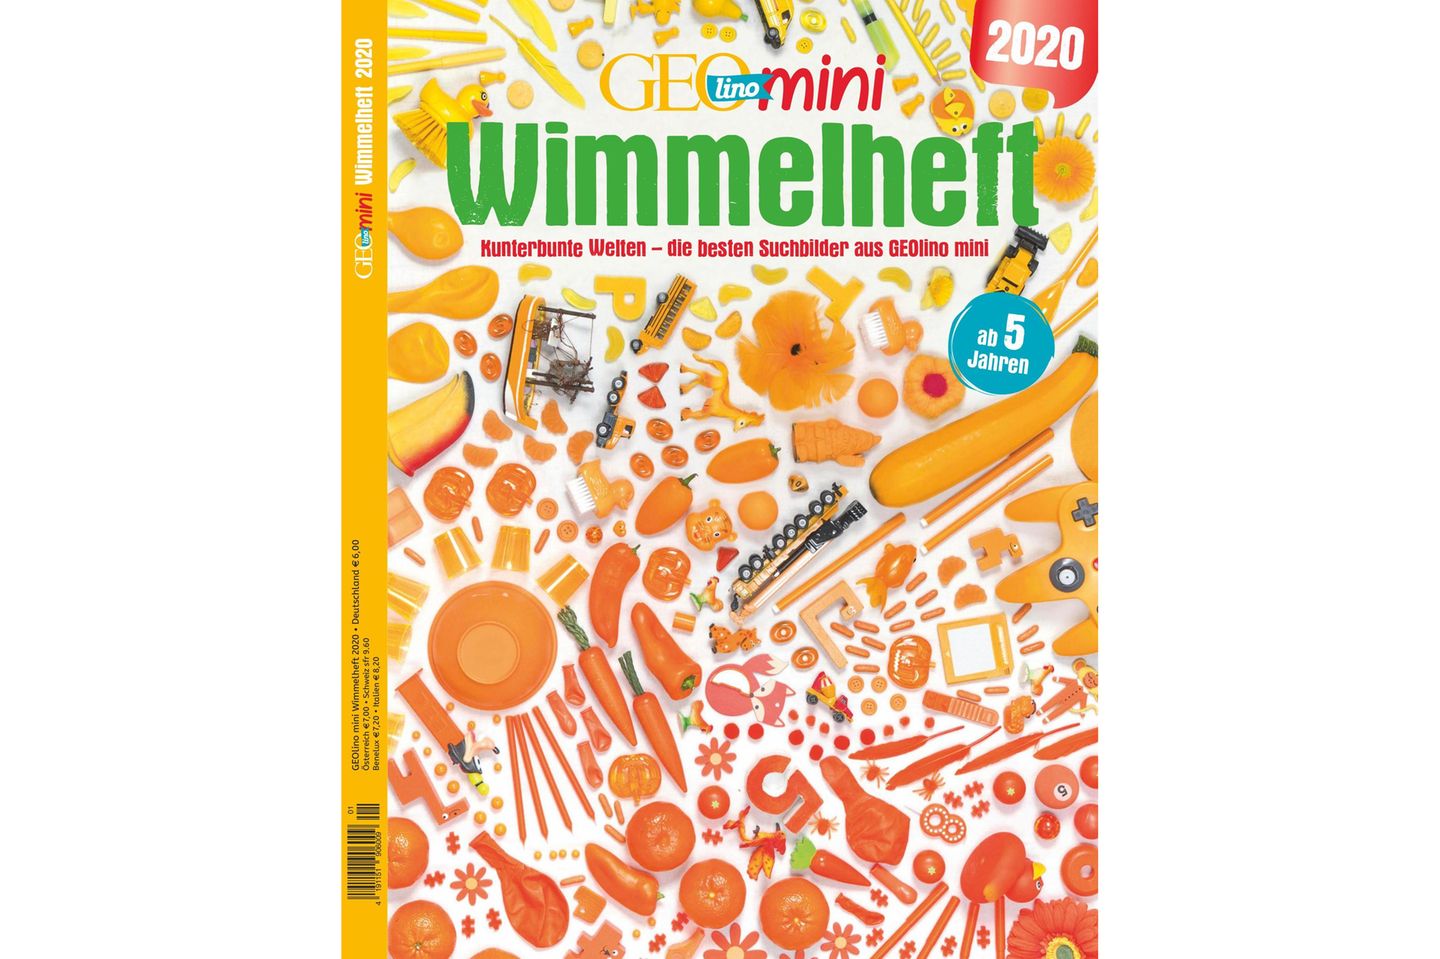 GEOlino Mini Wimmelheft Nr. 01/2020: Kunterbunte Welten - die besten Suchbilder aus GEOlino Mini